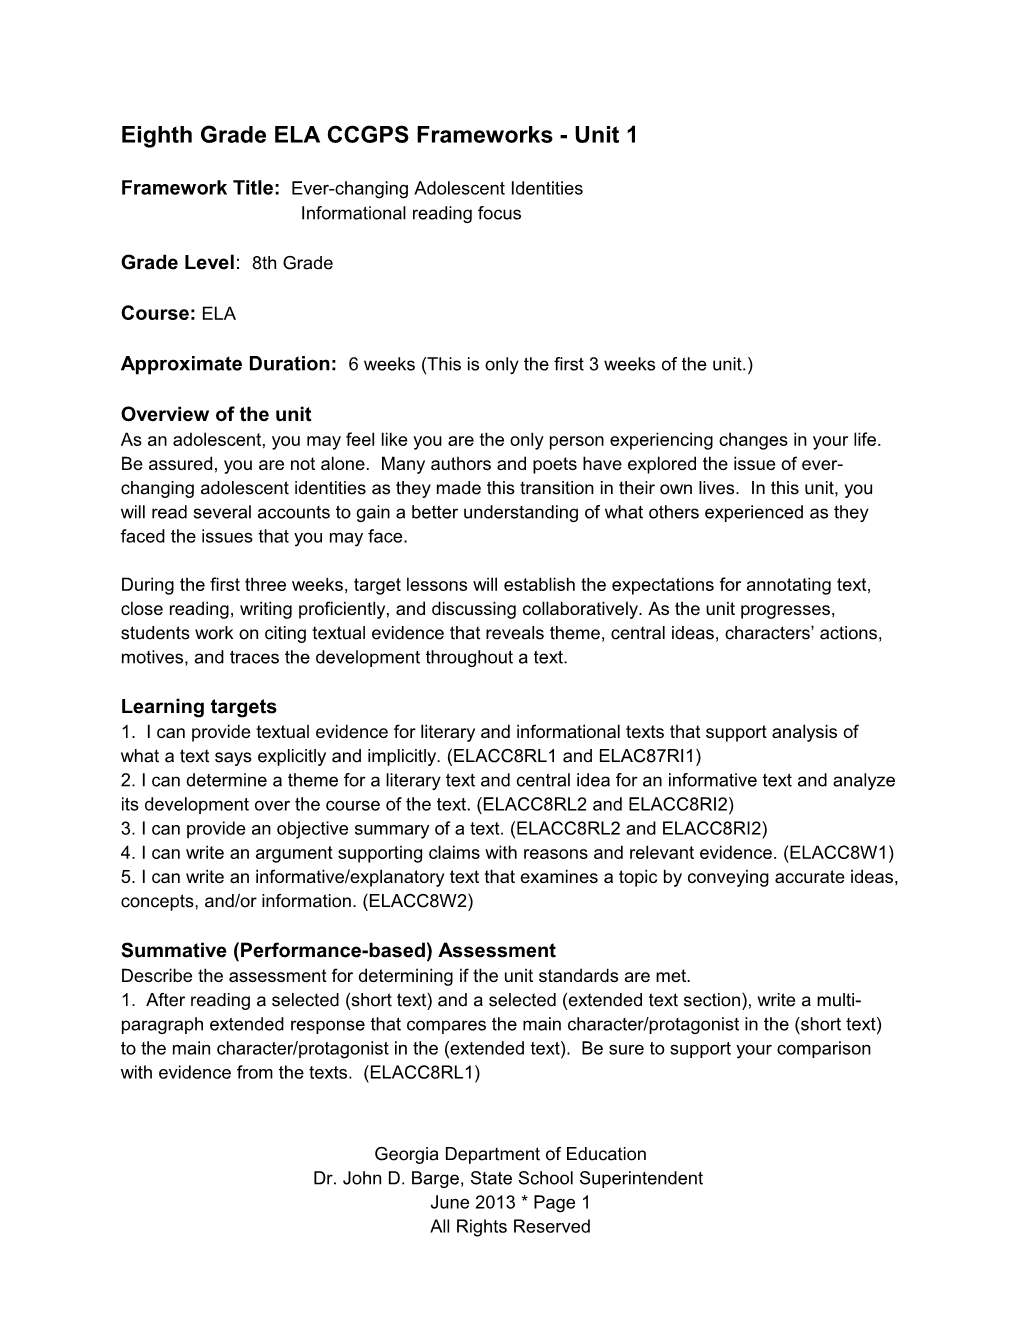 Grade 8 ELA CCGPS Frameworks Unit 1